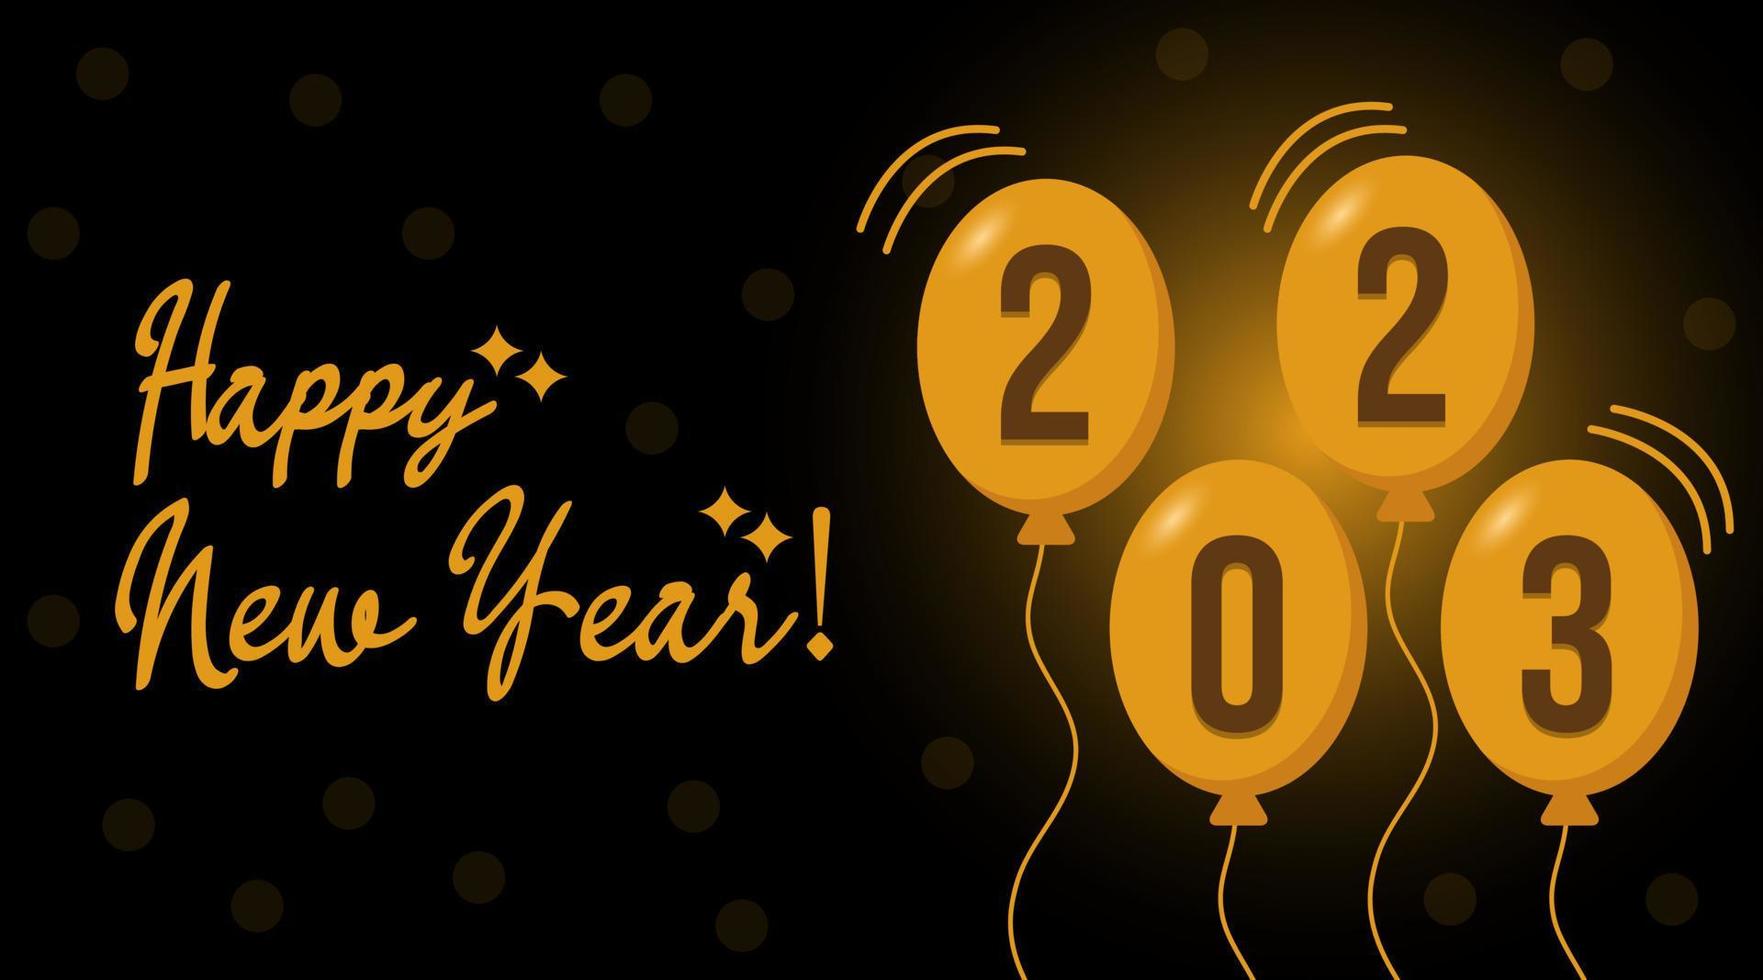 2023 happy new year background design. Golden lettering 2023 happy new year on black background vector